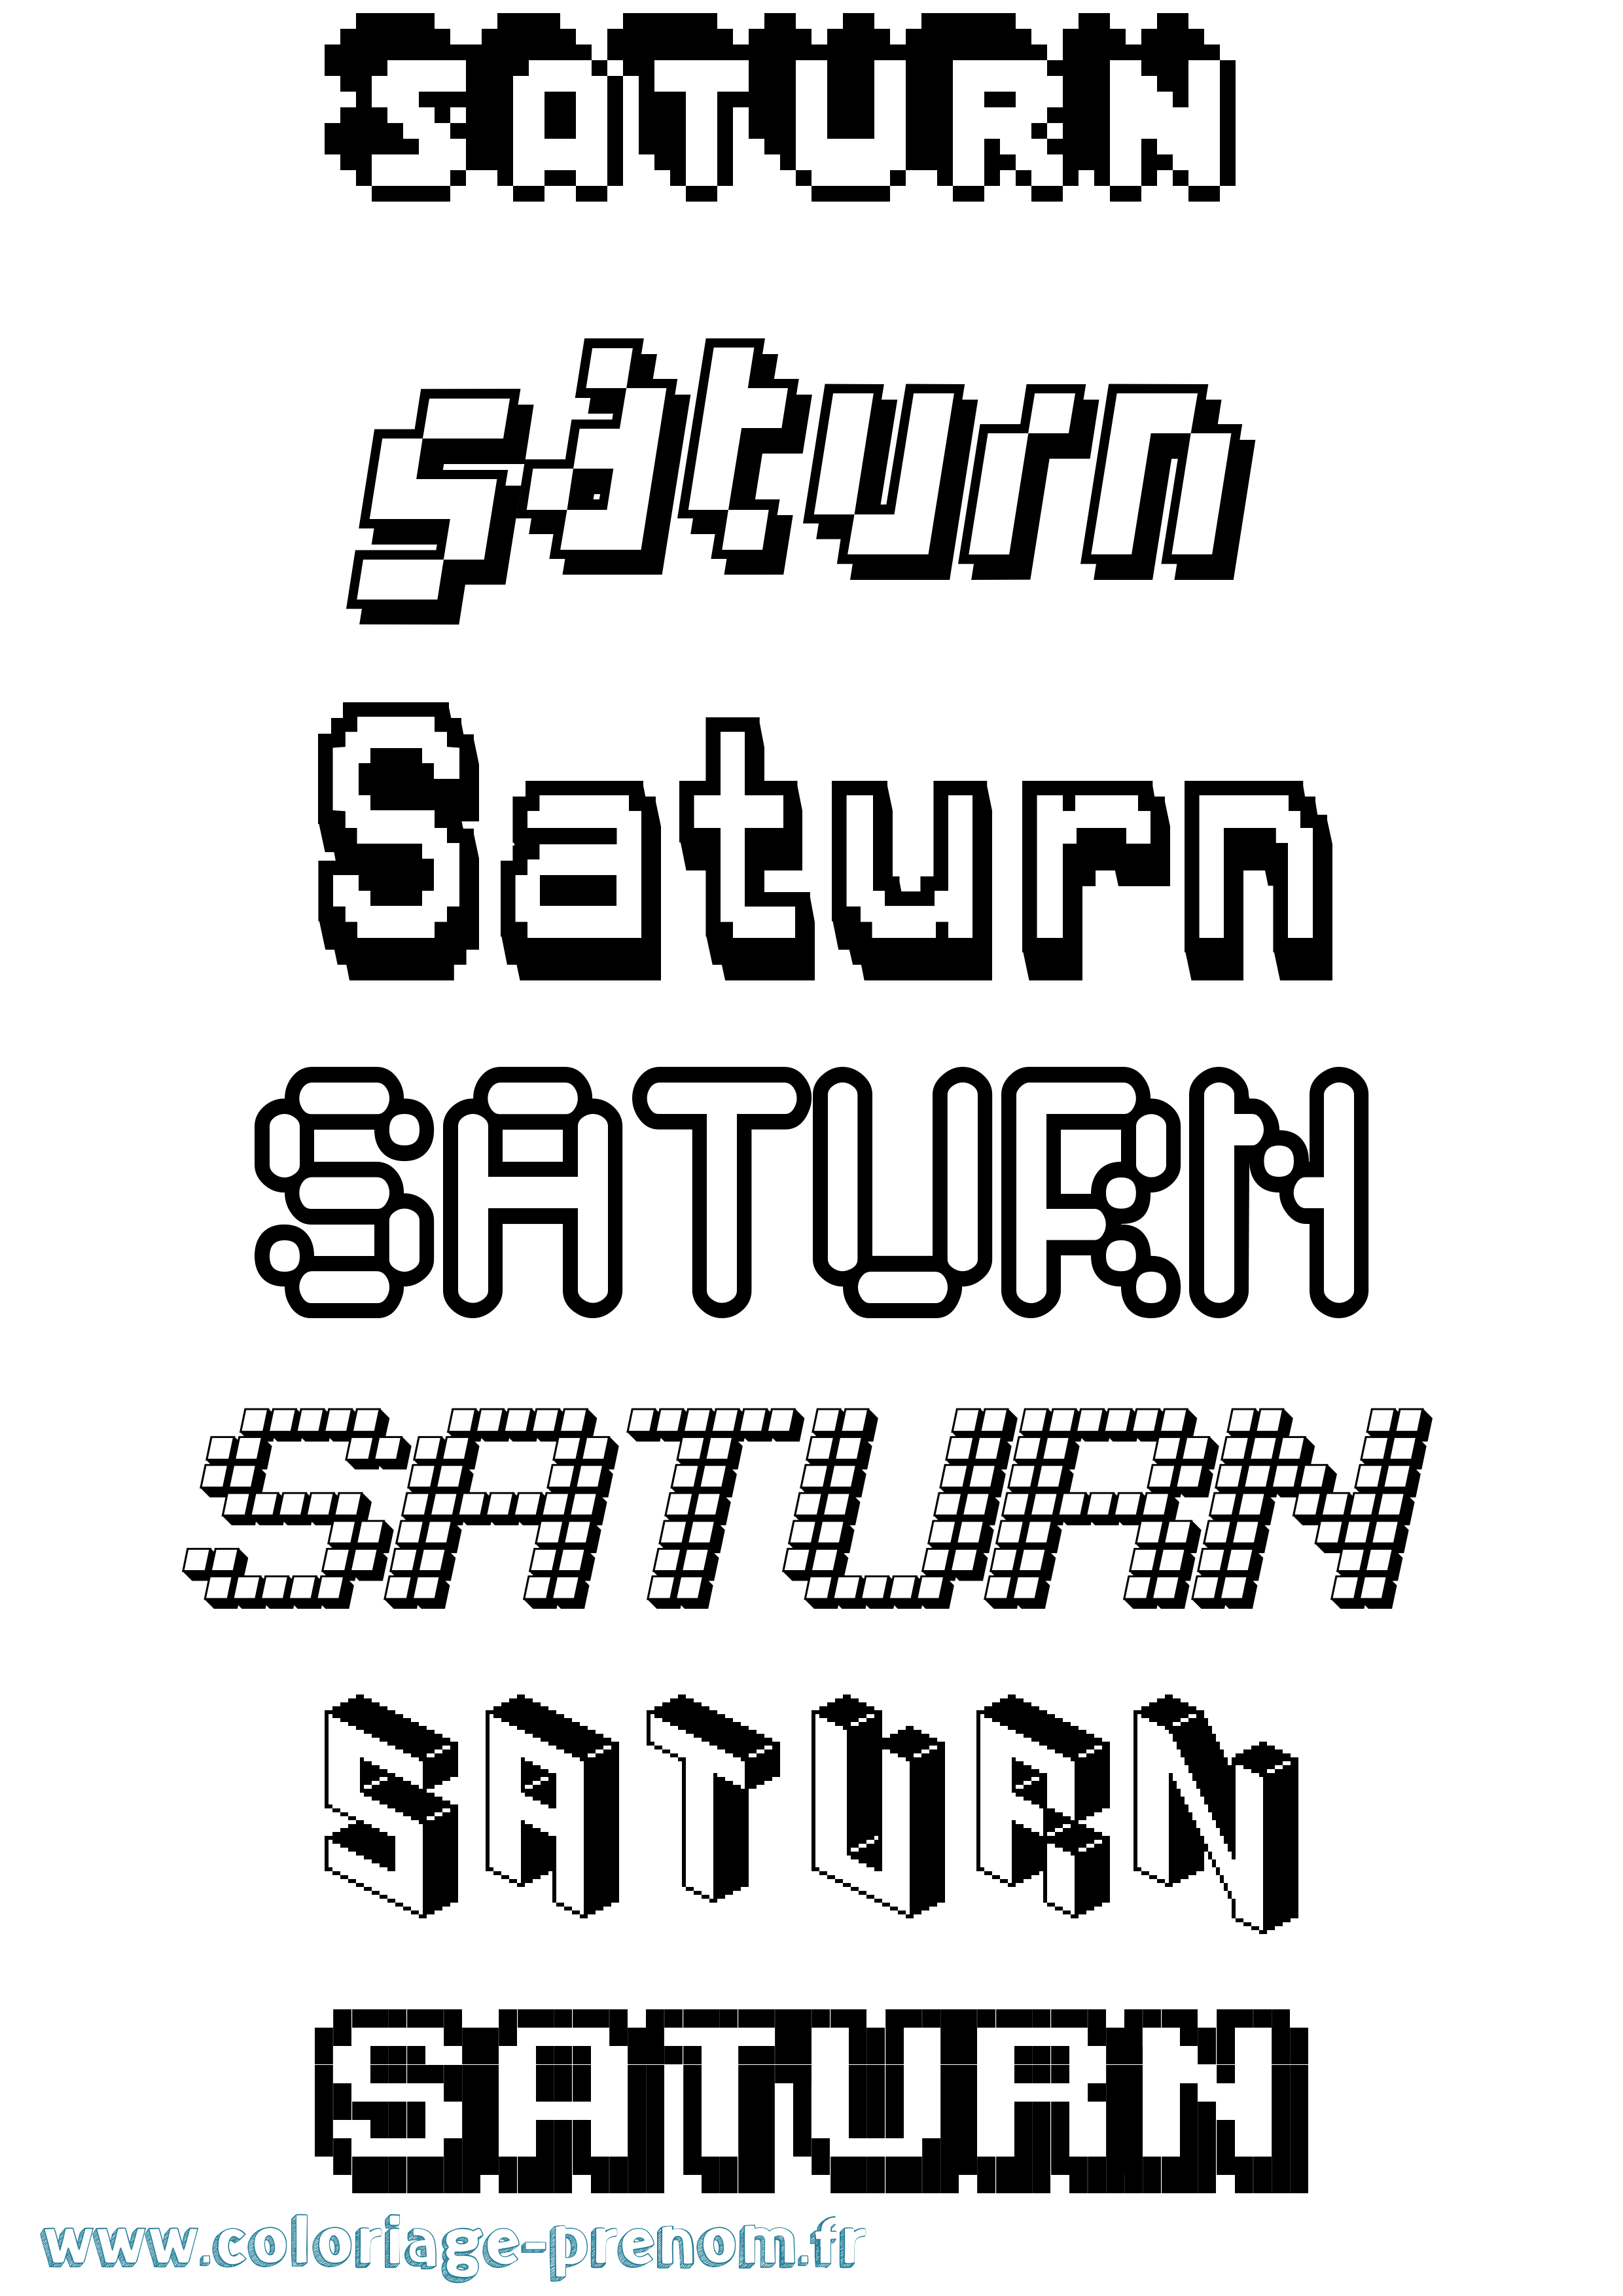 Coloriage prénom Saturn Pixel